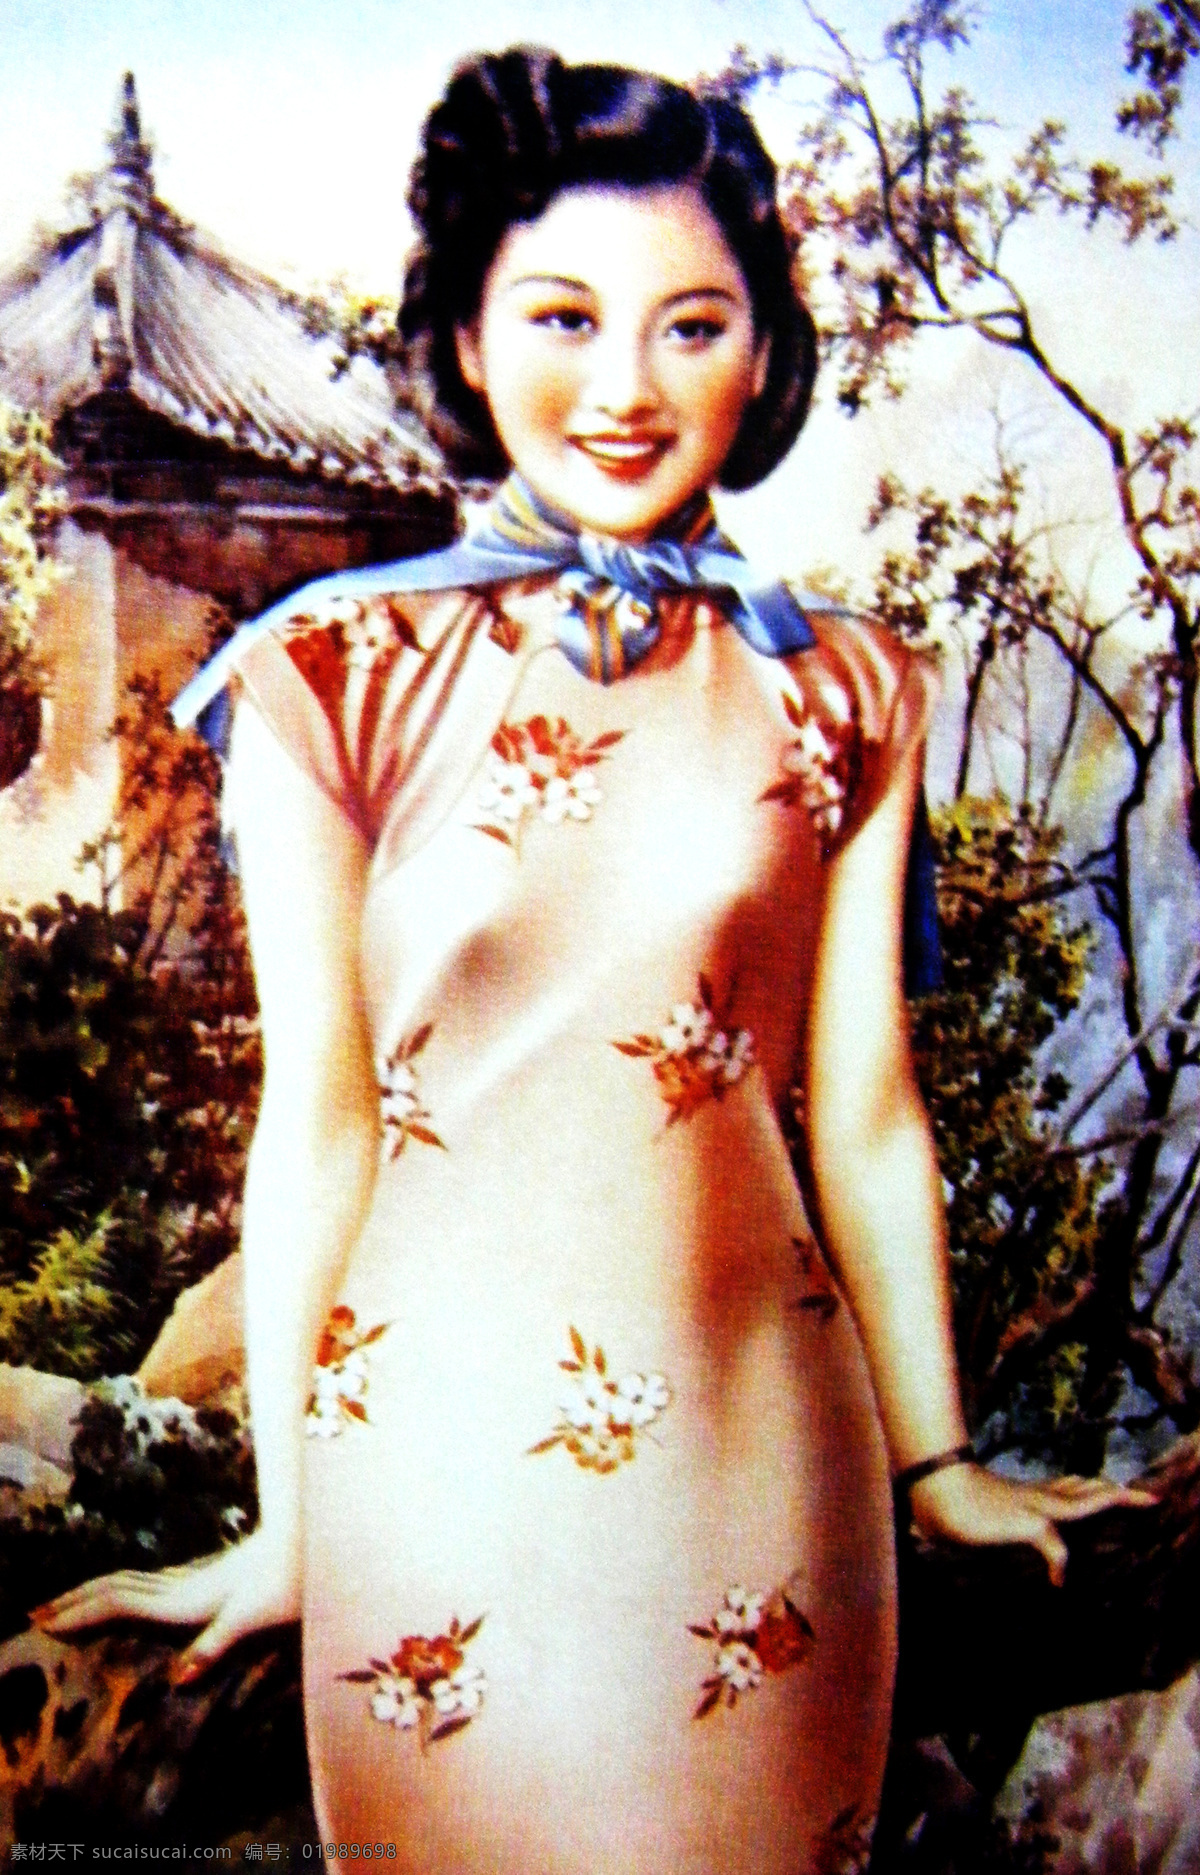 老上海月份牌 老上海 月份牌 月份牌美女 美女 广告 旗袍 旗袍美女 文化艺术 绘画书法 设计图库